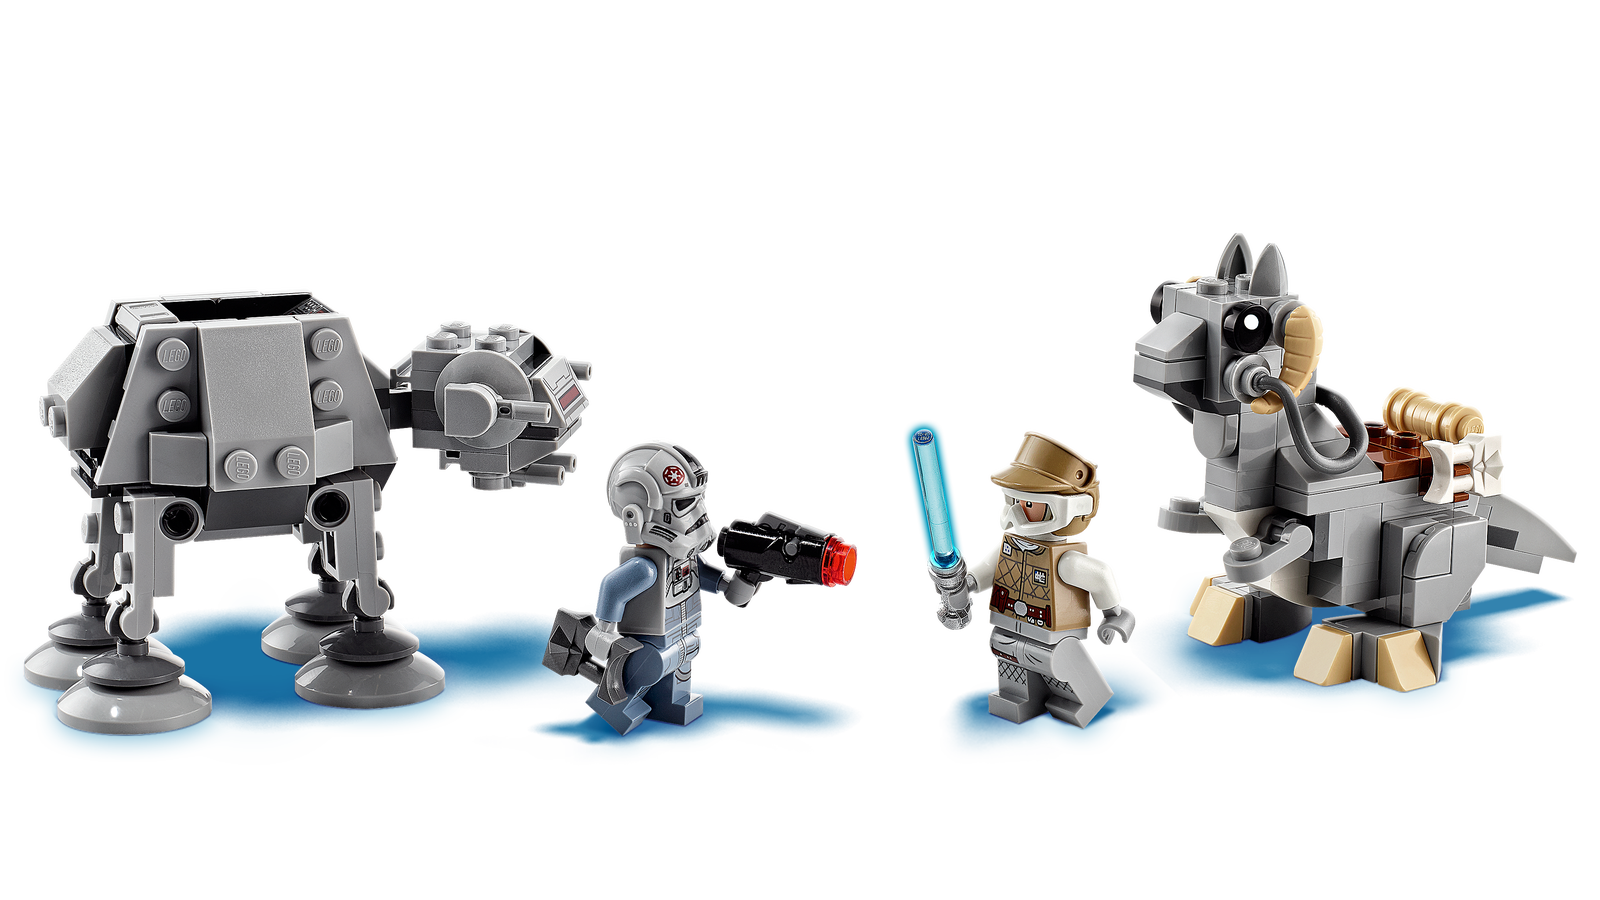 Lego Star Wars AT-AT vs Tauntaun Microfighters 75298